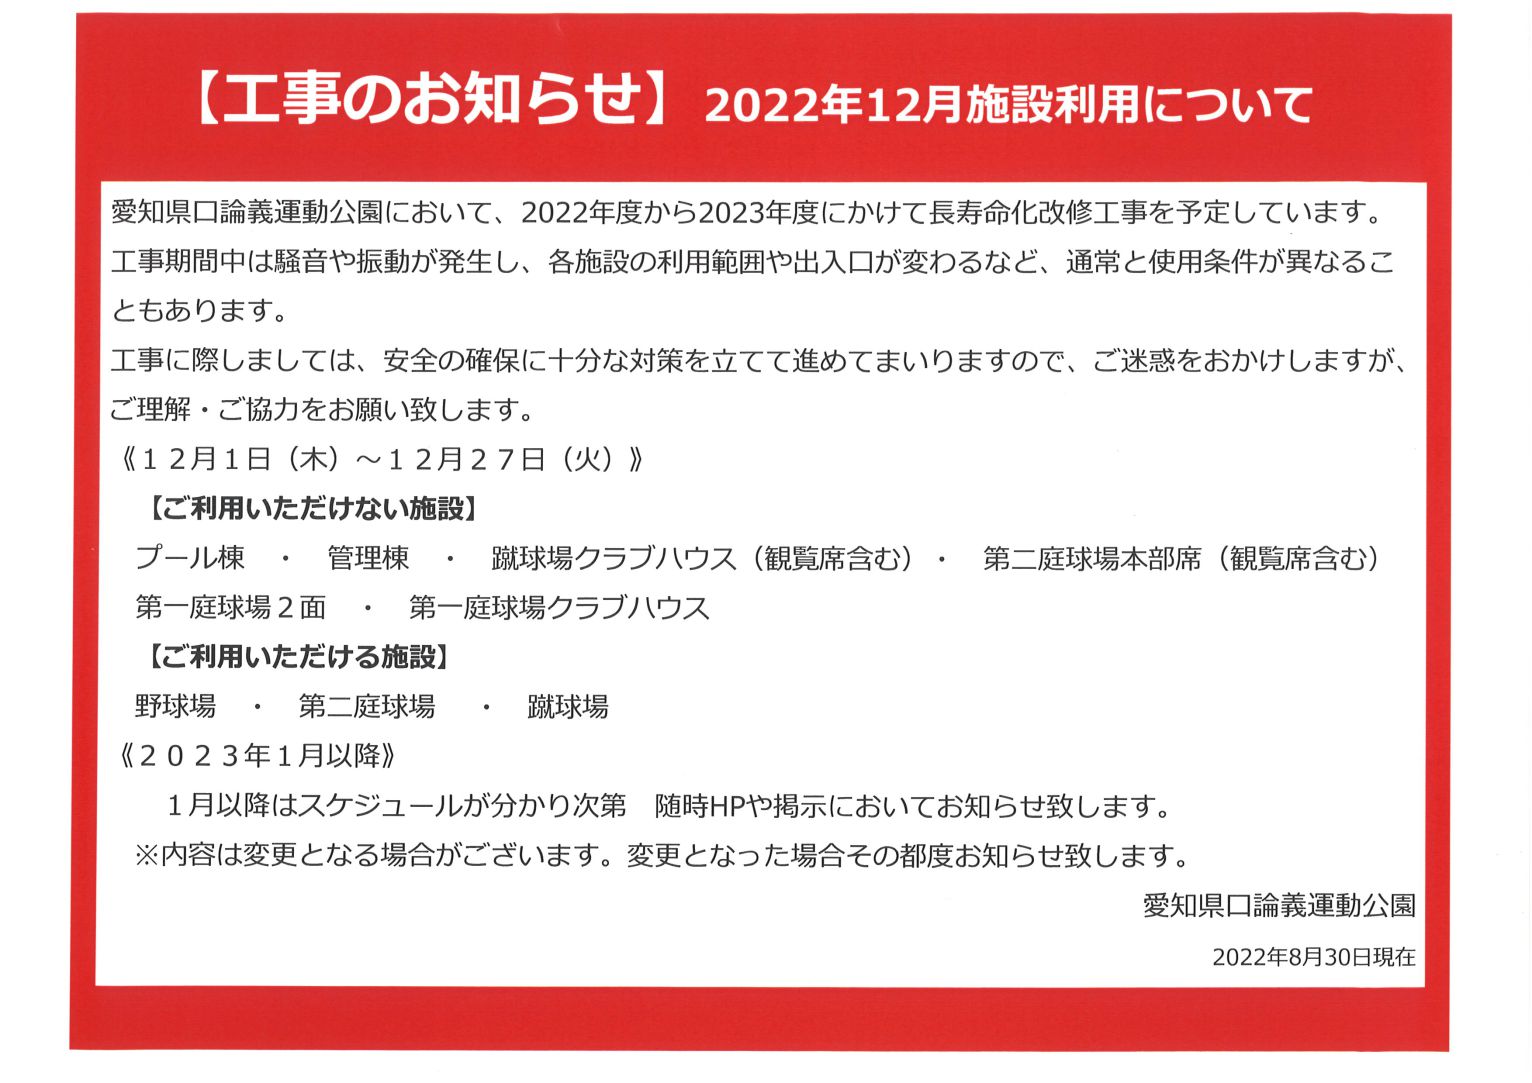 【工事のお知らせ】2022年12月施設利用について